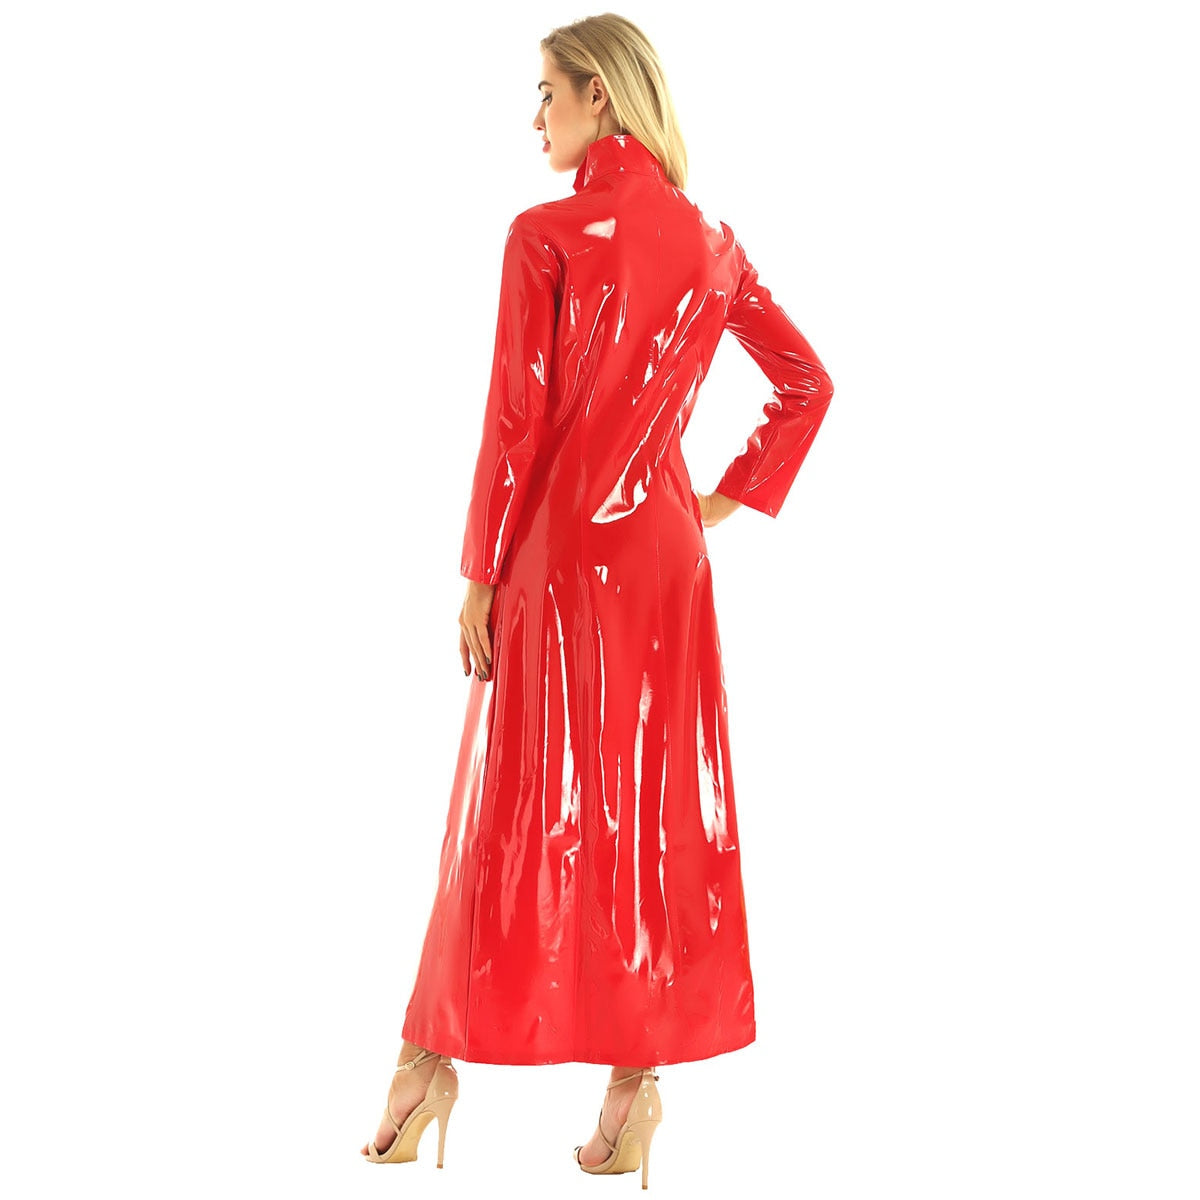 Women's Wet look Long Leather Dress - skyjackerz